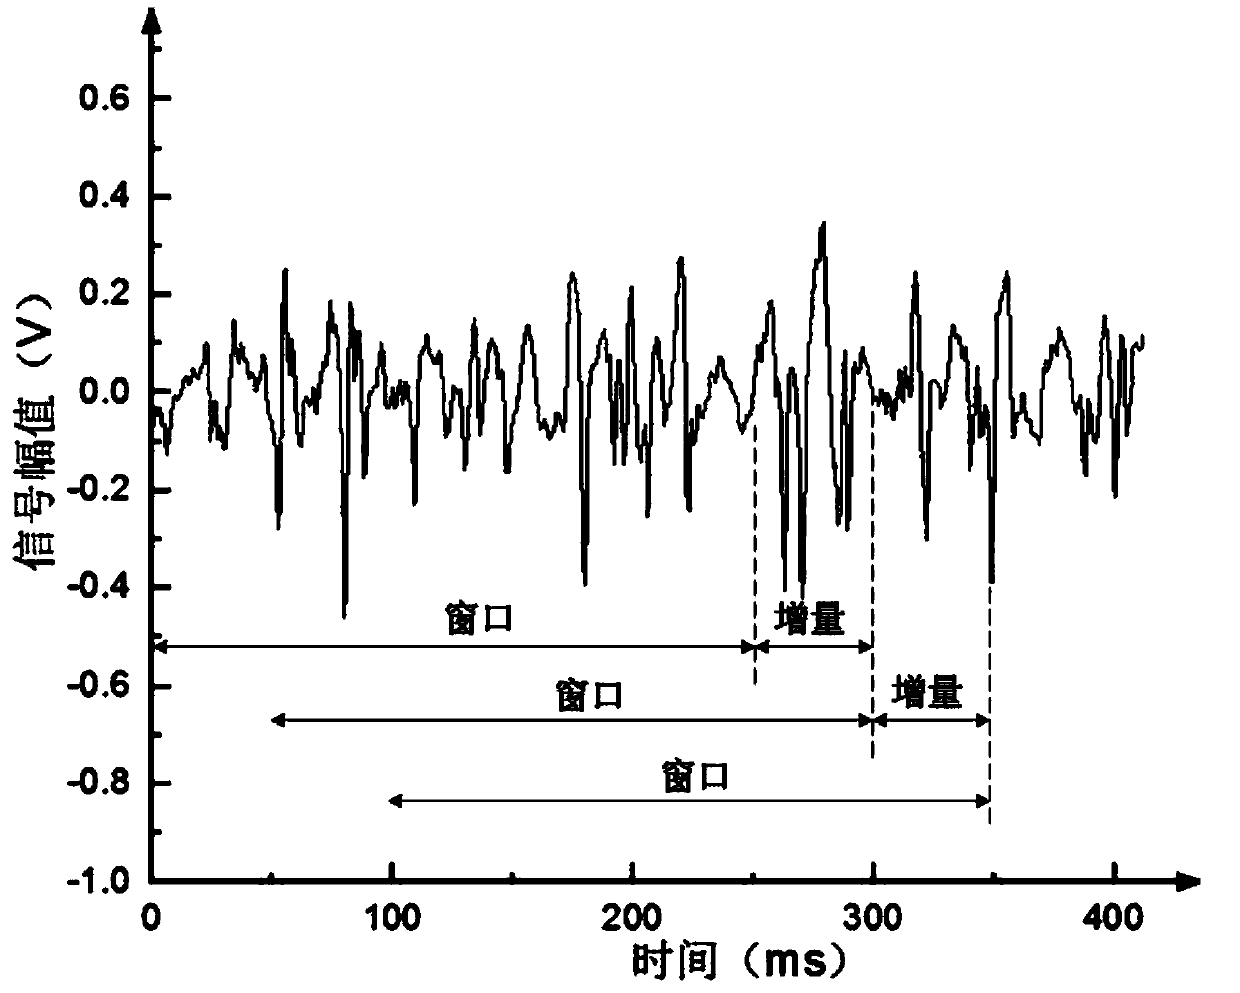 Surface electromyogram signal identification method based on LDA algorithm